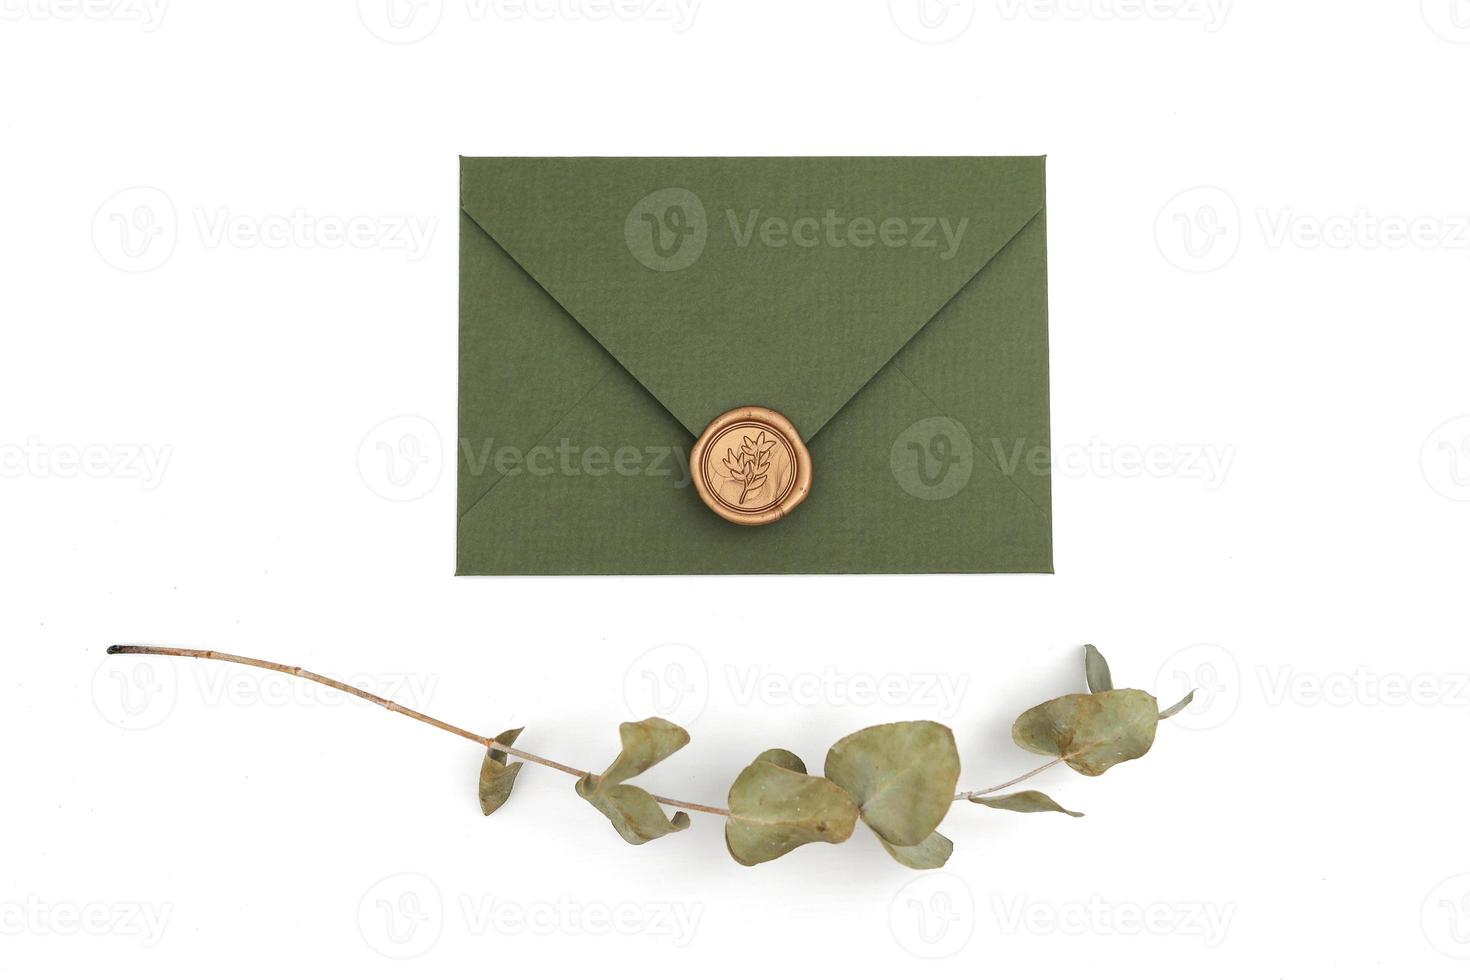 groene envelop met designer karton en zegel op een witte achtergrond. envelop met zegel foto